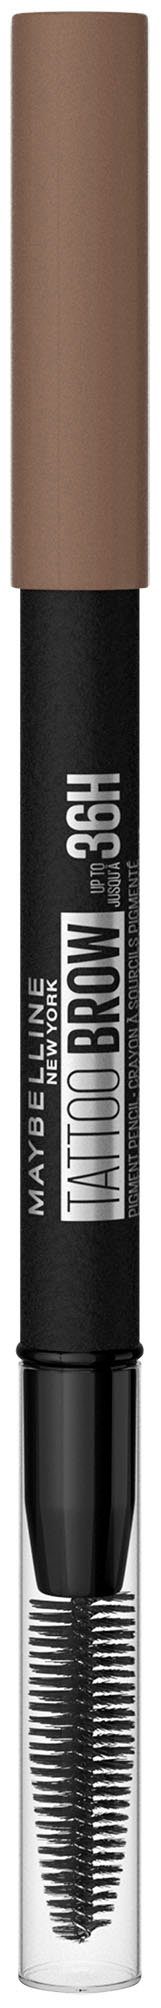 NEW Bürste, Augen-Make-Up Brow Augenbrauen-Stift mit MAYBELLINE Formel, Blonde YORK 2 Tattoo wasserfeste 36H,